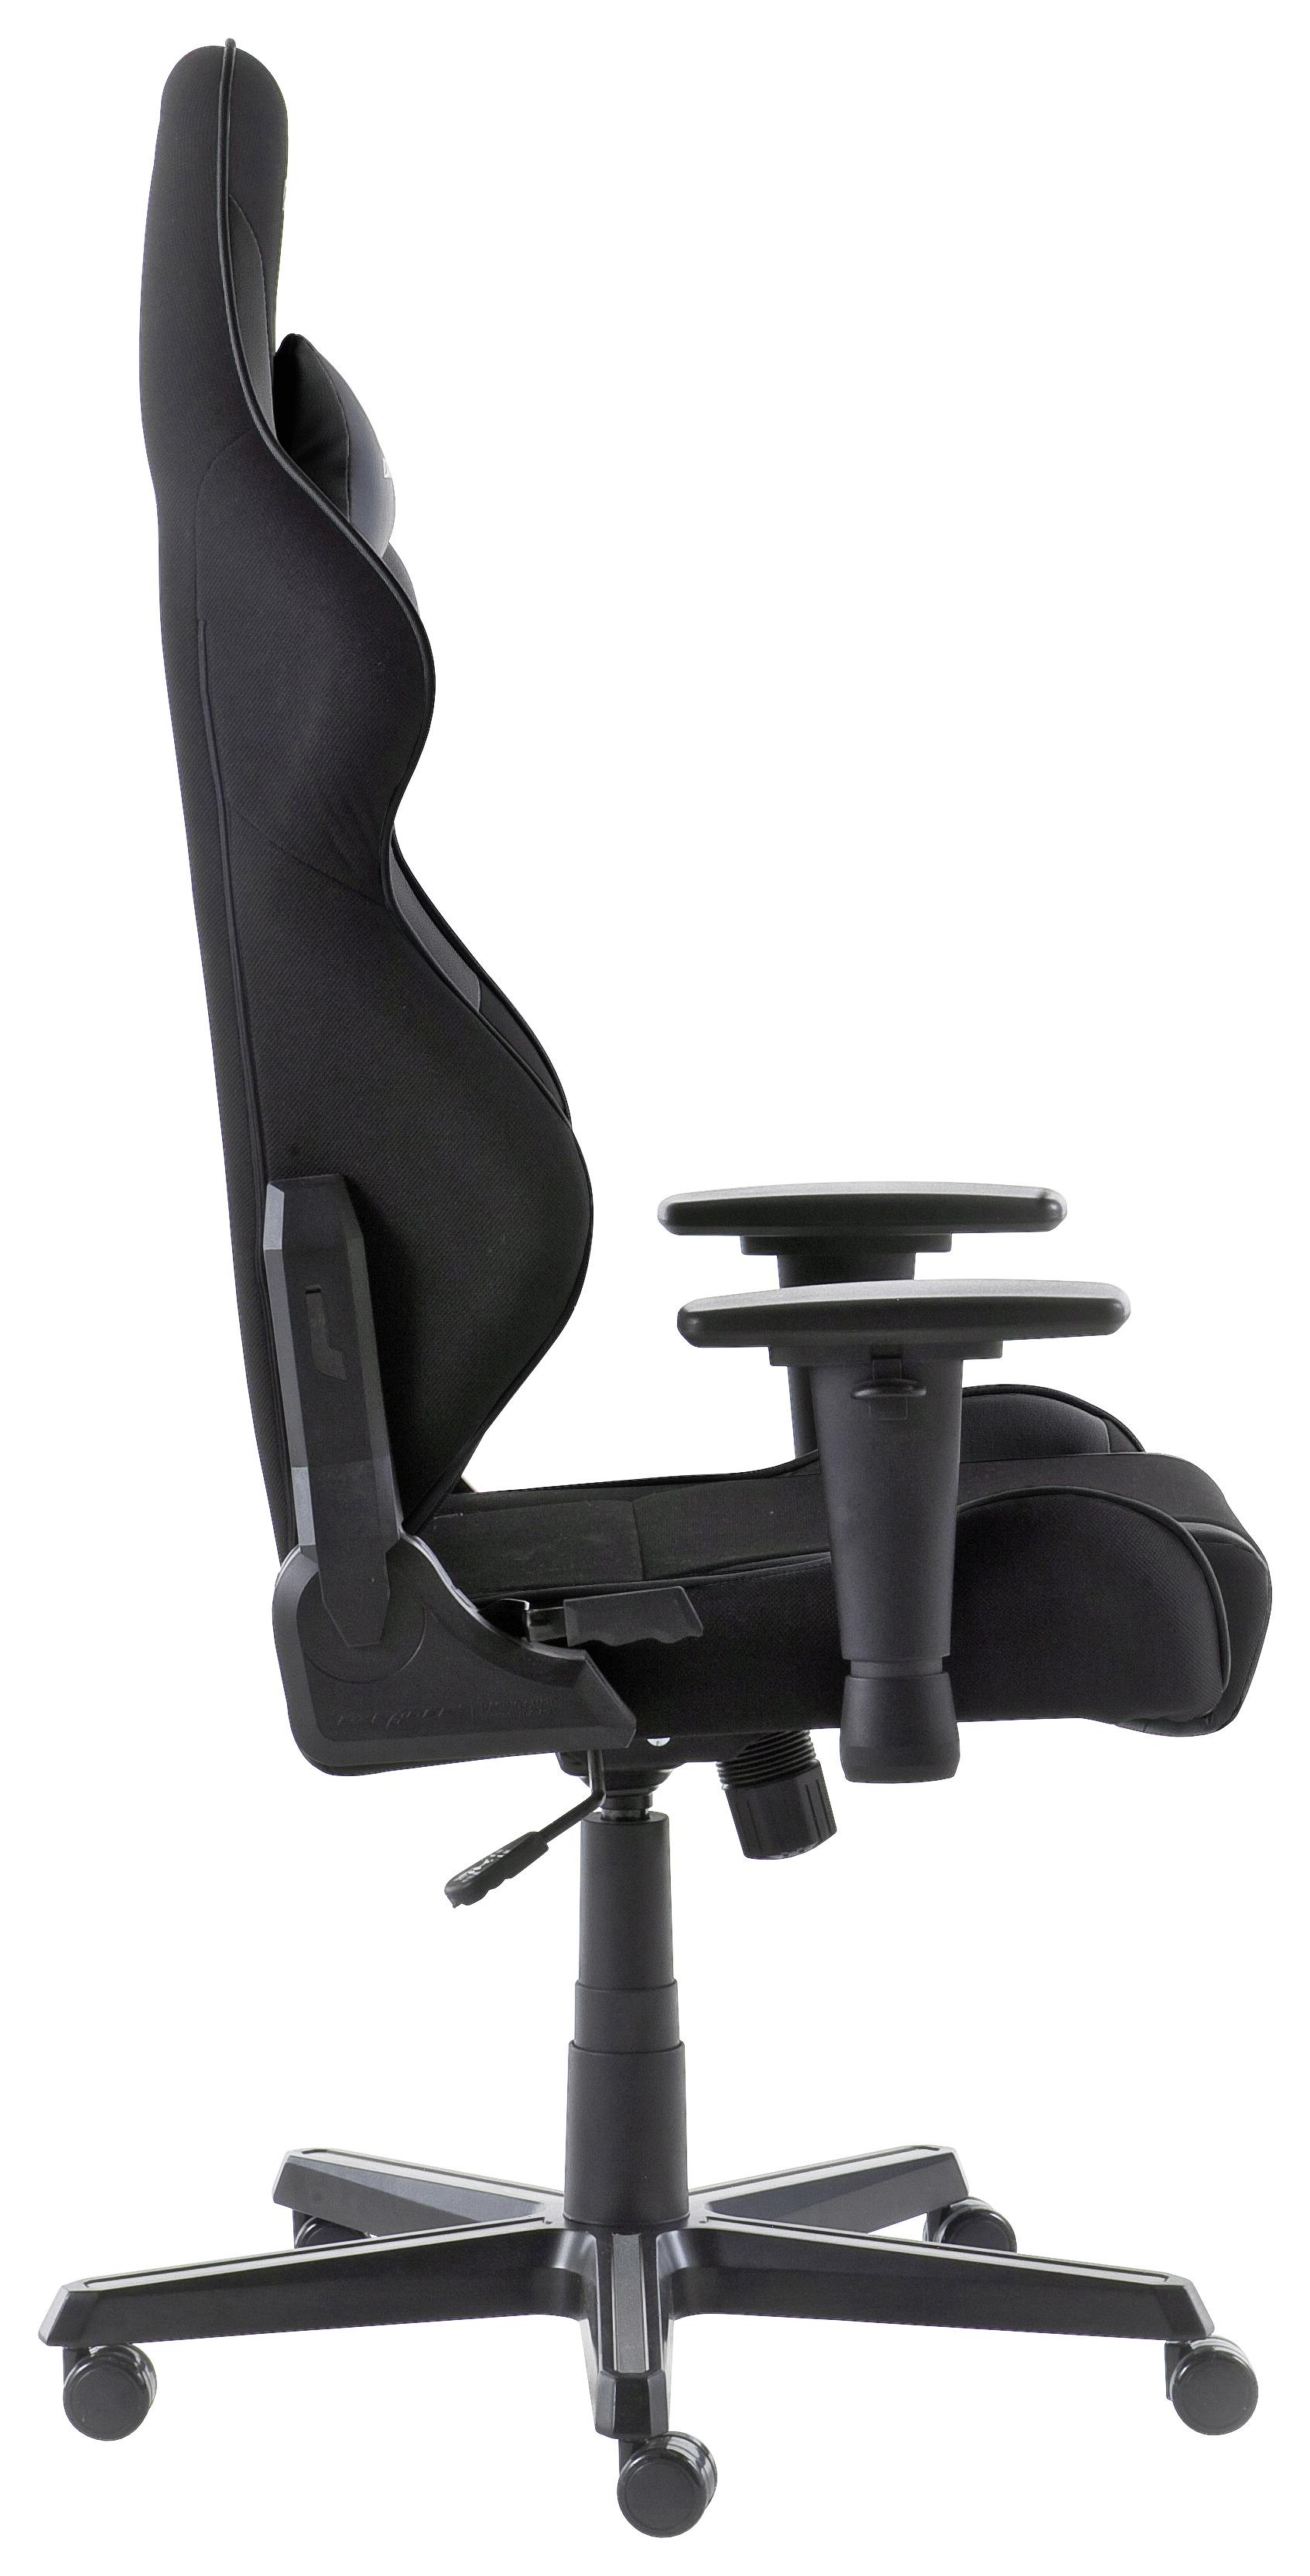 Gaming Stuhl Dxracer V3 mit Rückenkissen, Schwarz - Schwarz, MODERN, Kunststoff/Textil (65/119-128/66cm) - Dxracer